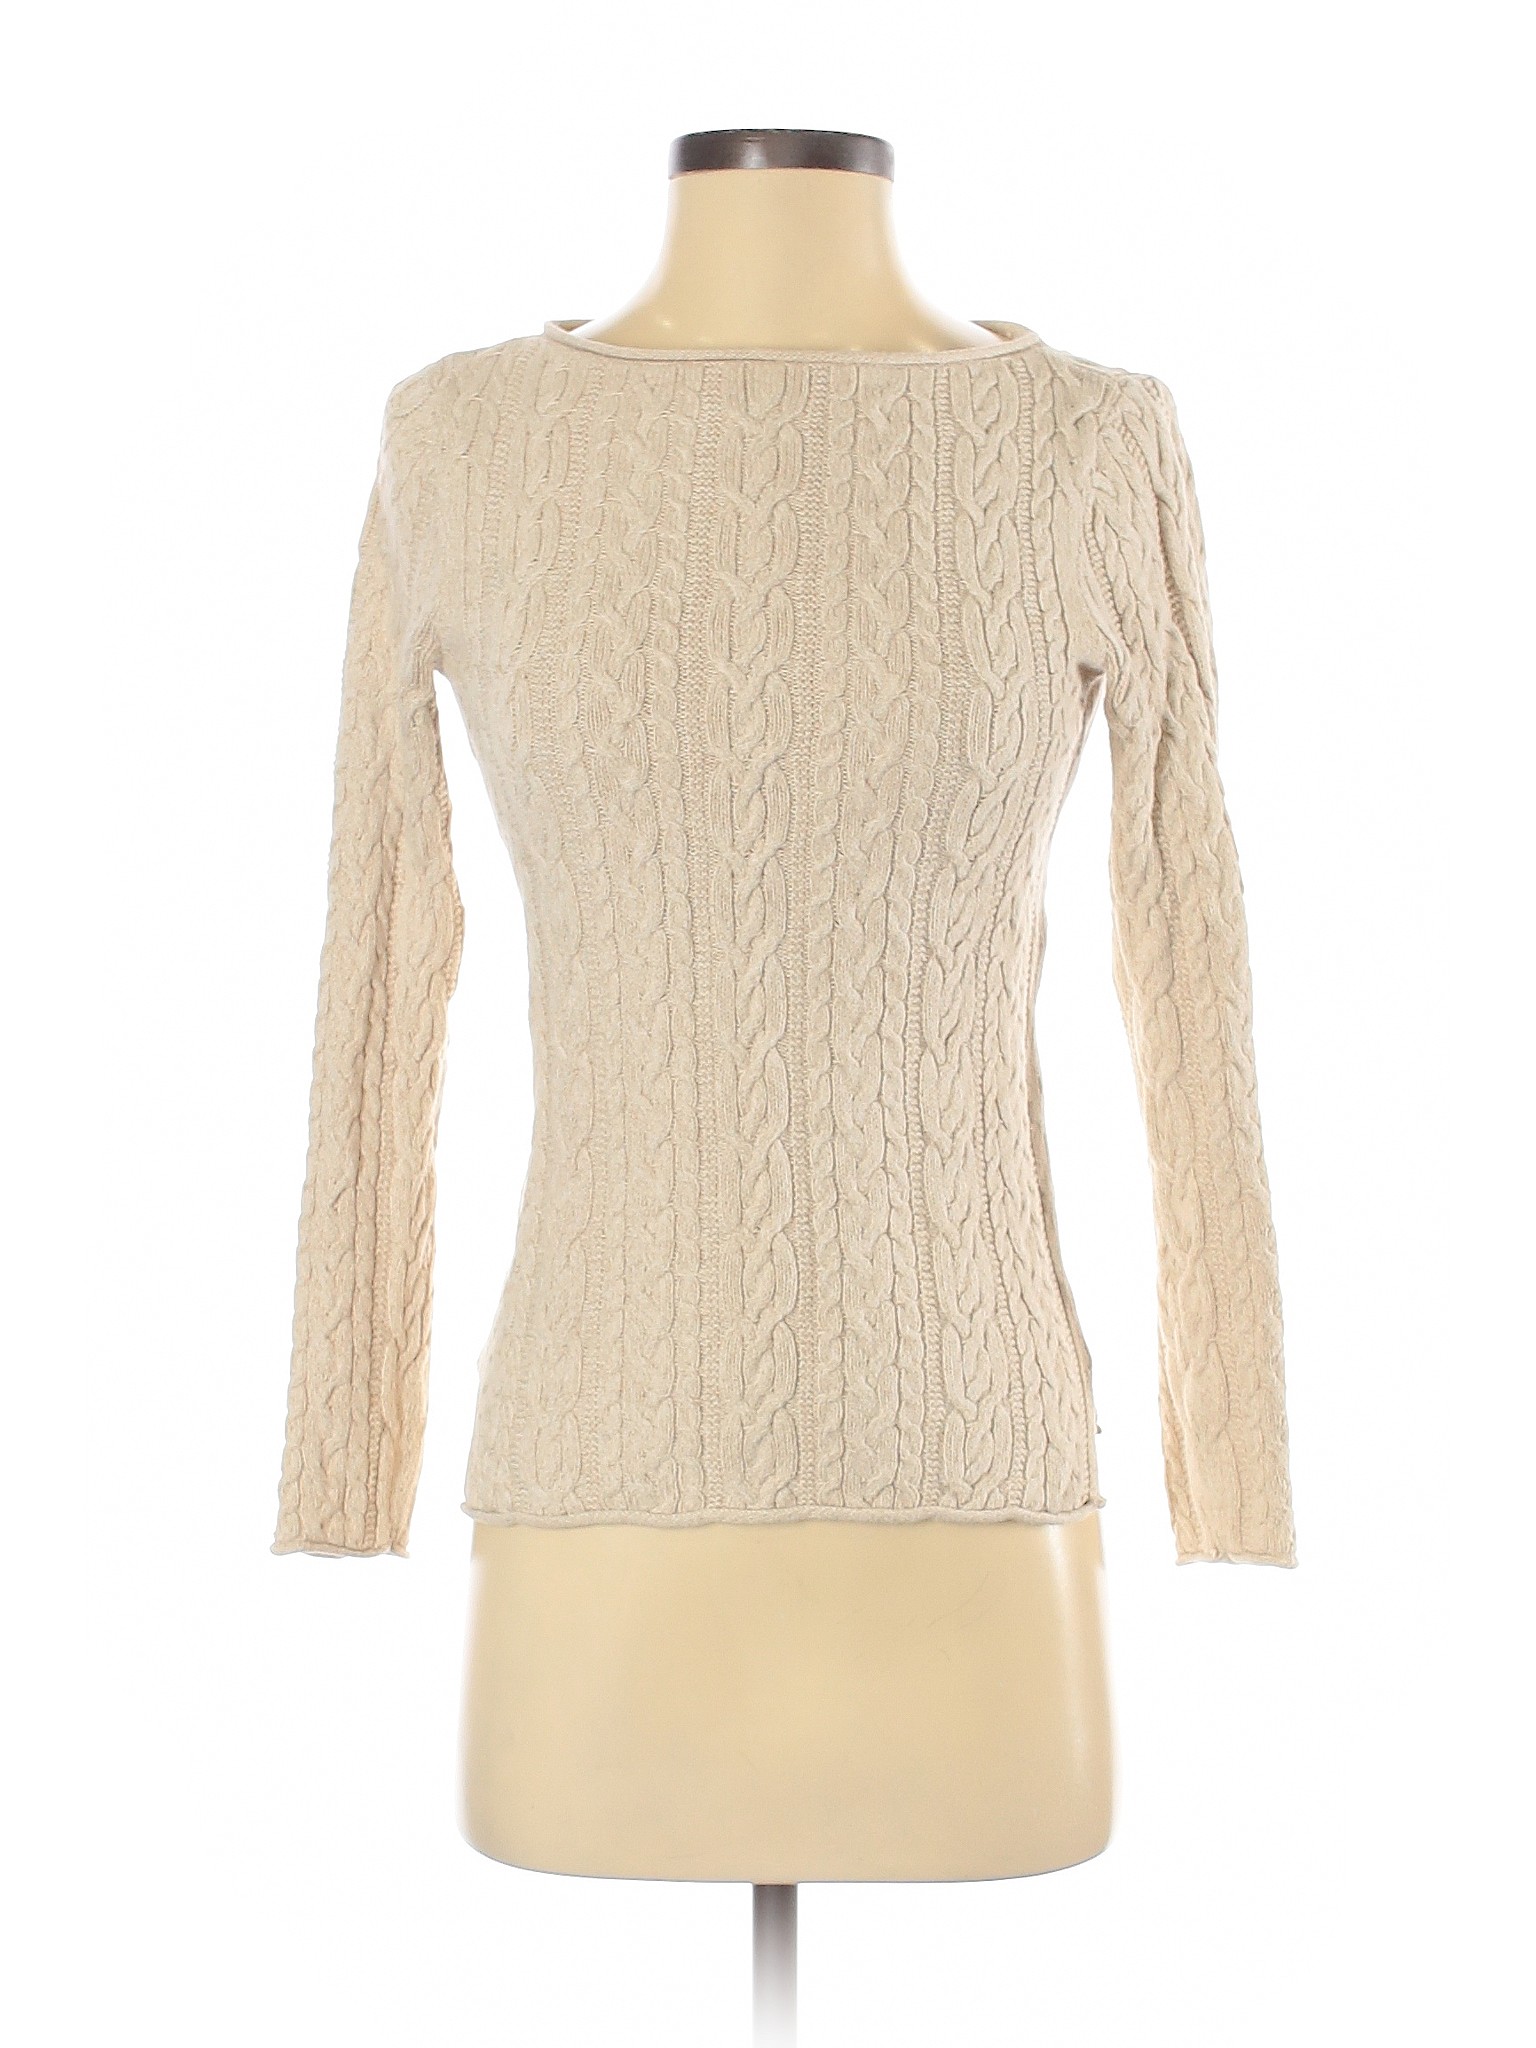 Lauren by Ralph Lauren Women Brown Pullover Sweater XS | eBay